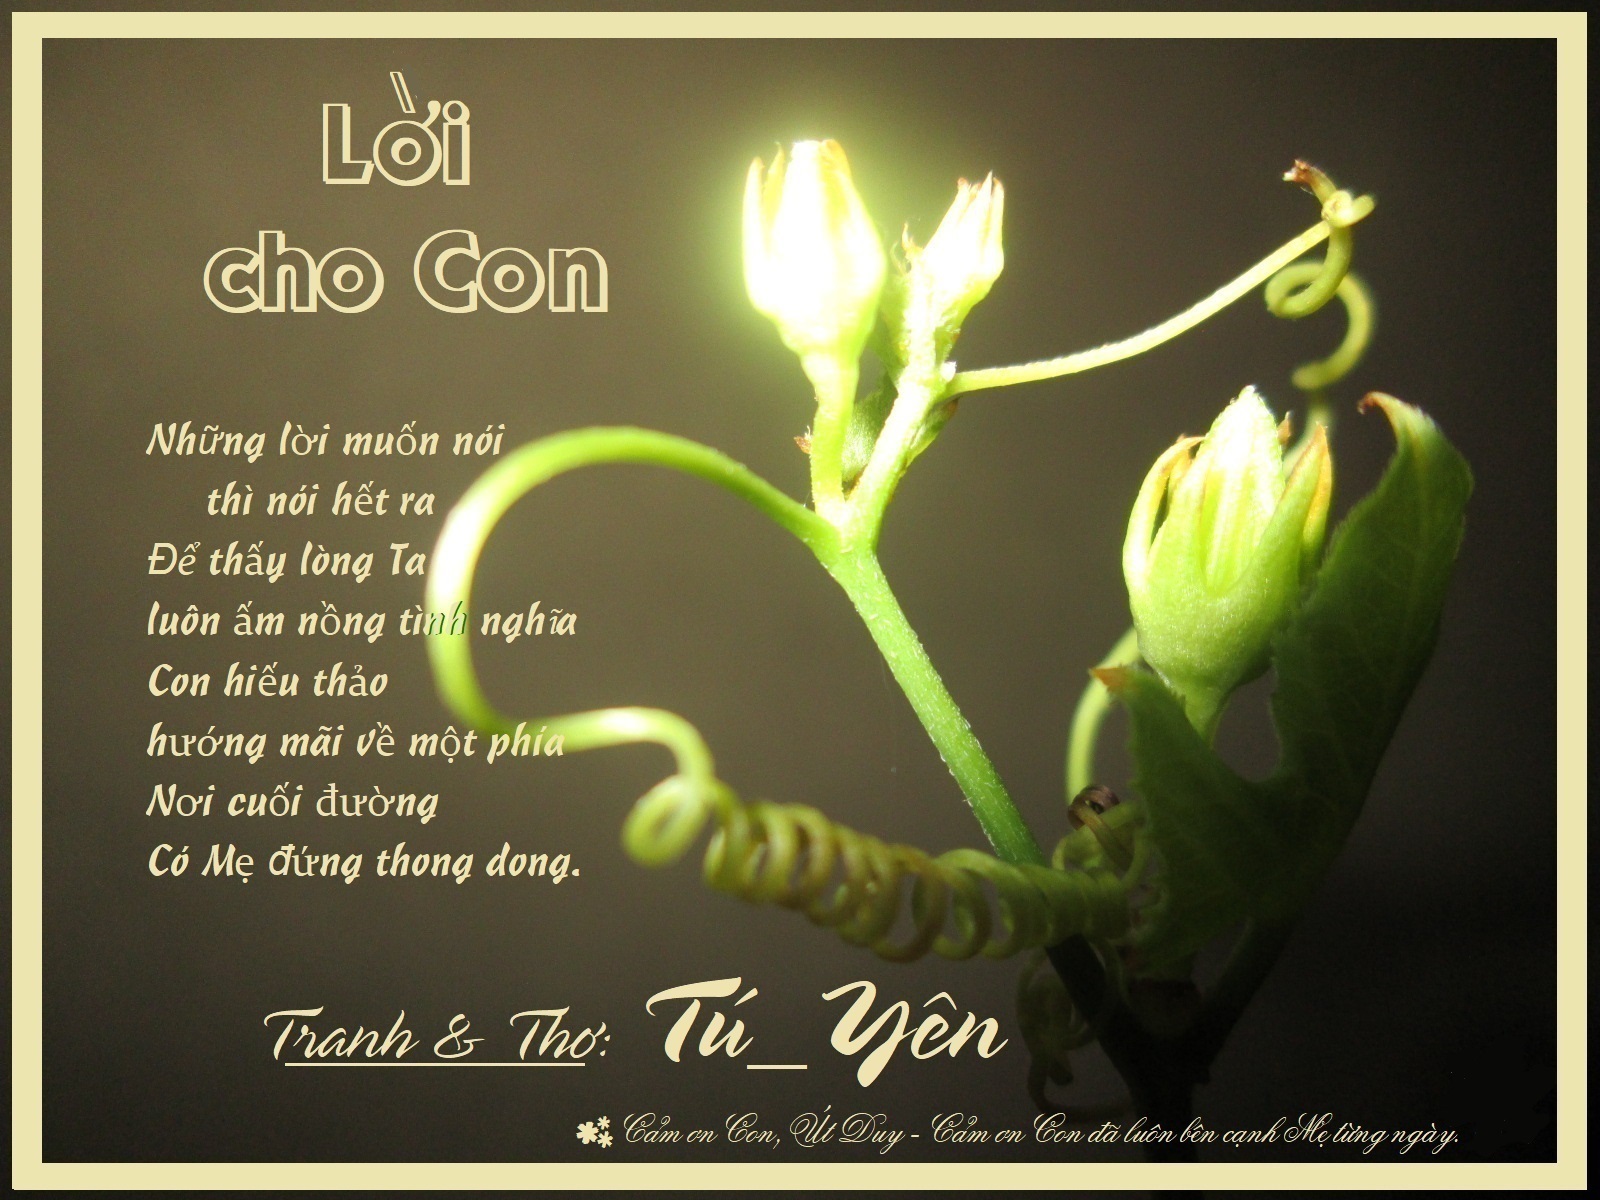 Tranh thơ Tú_Yên - Page 15 Loichocon2